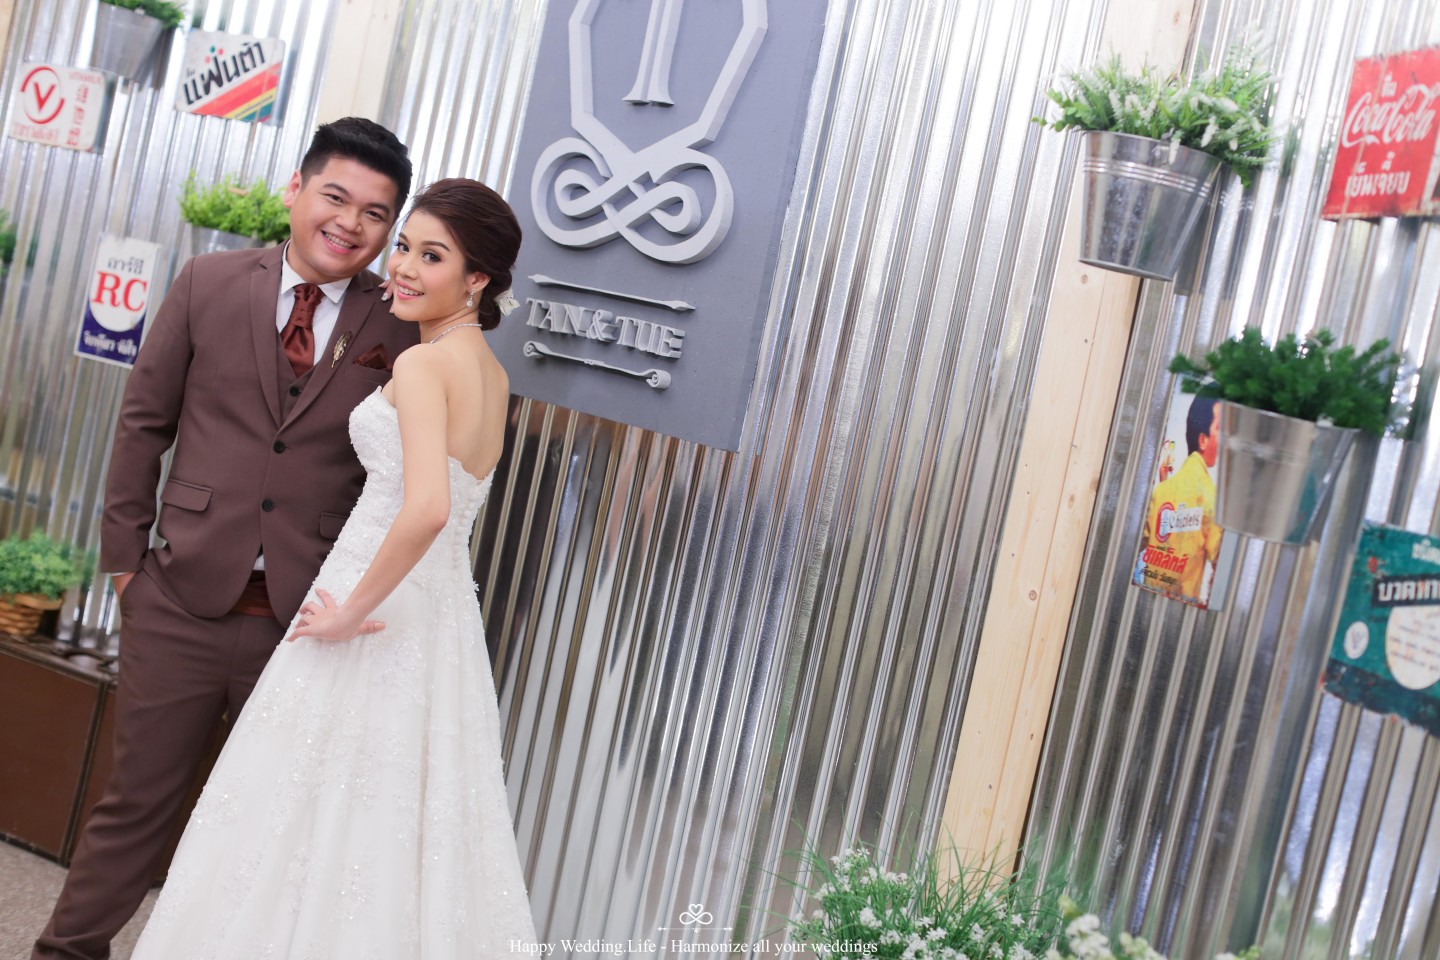 ธีมงานแต่งอัลเทอร์เนทีฟ- Harmonize Wedding planner bangkok